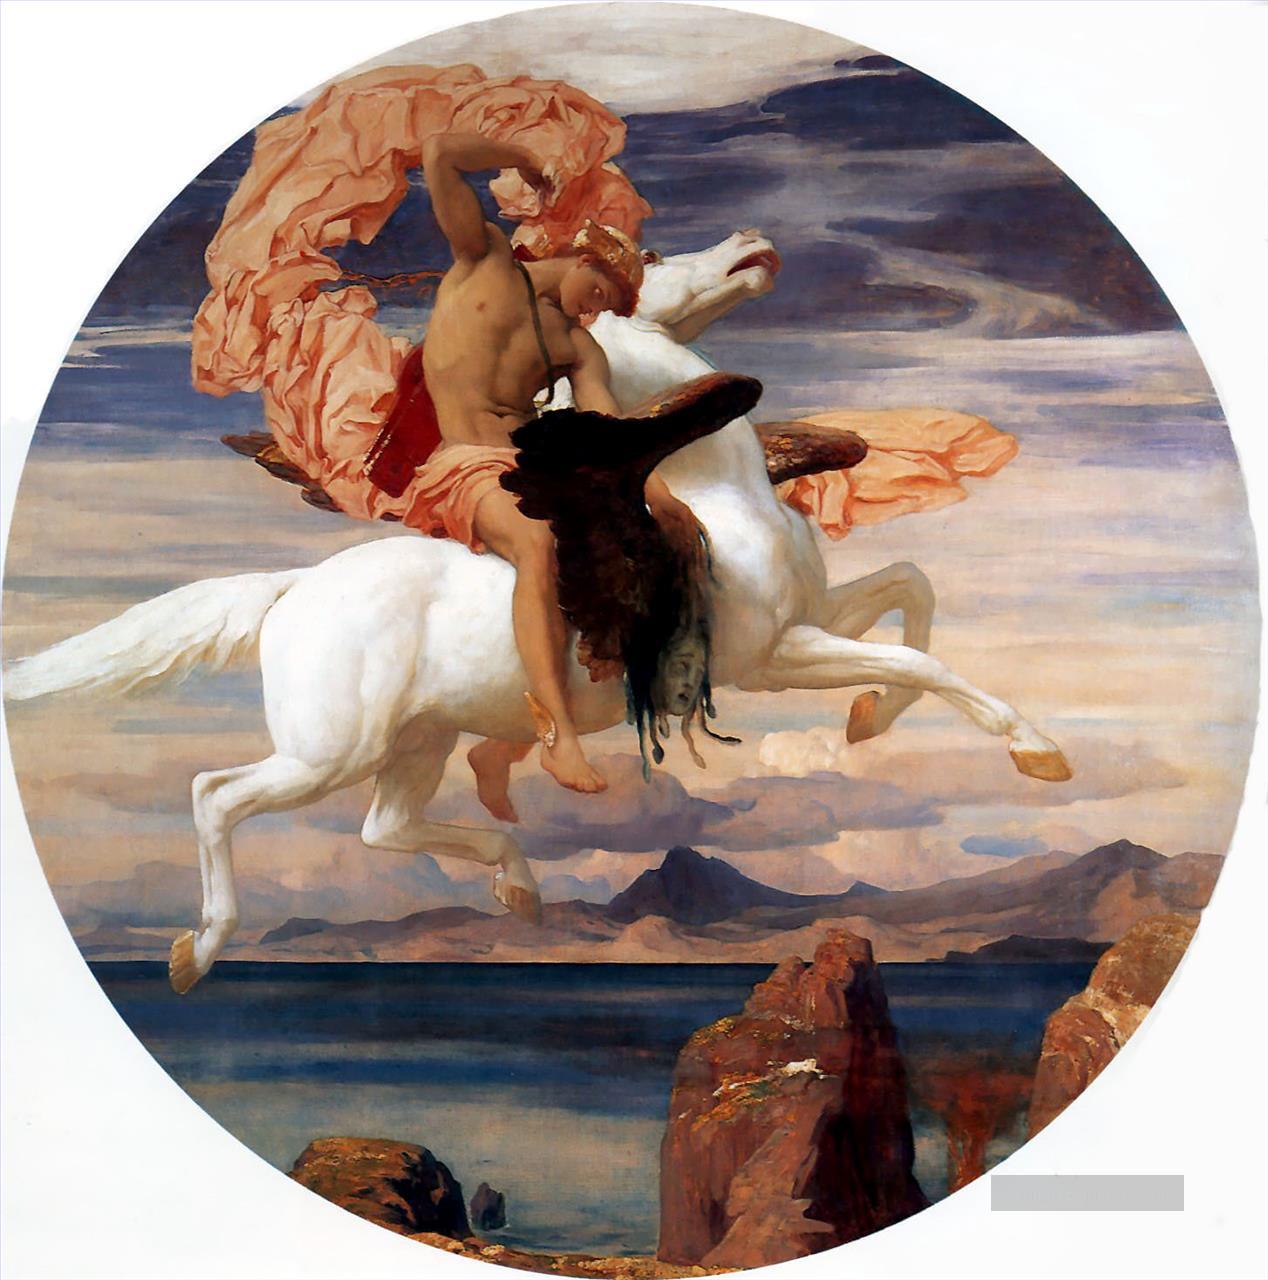 Perseus auf Pegasus hastening zu die Rettung der Andromeda 1895 Akademismus Frederic Leighton Ölgemälde